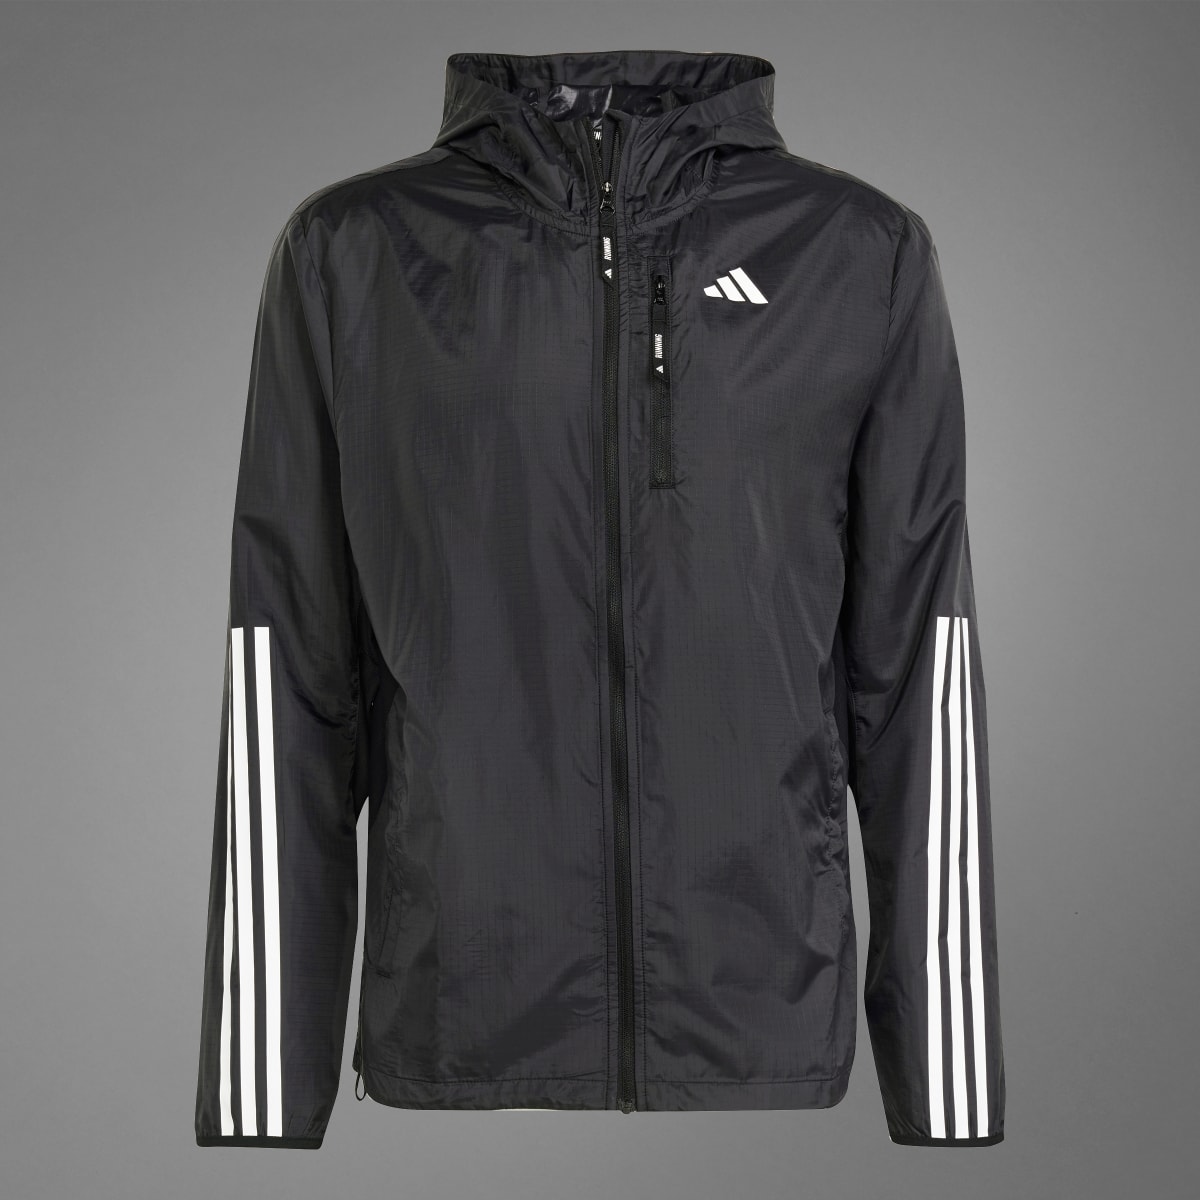 Adidas Own the Run 3-Stripes Jacket. 9